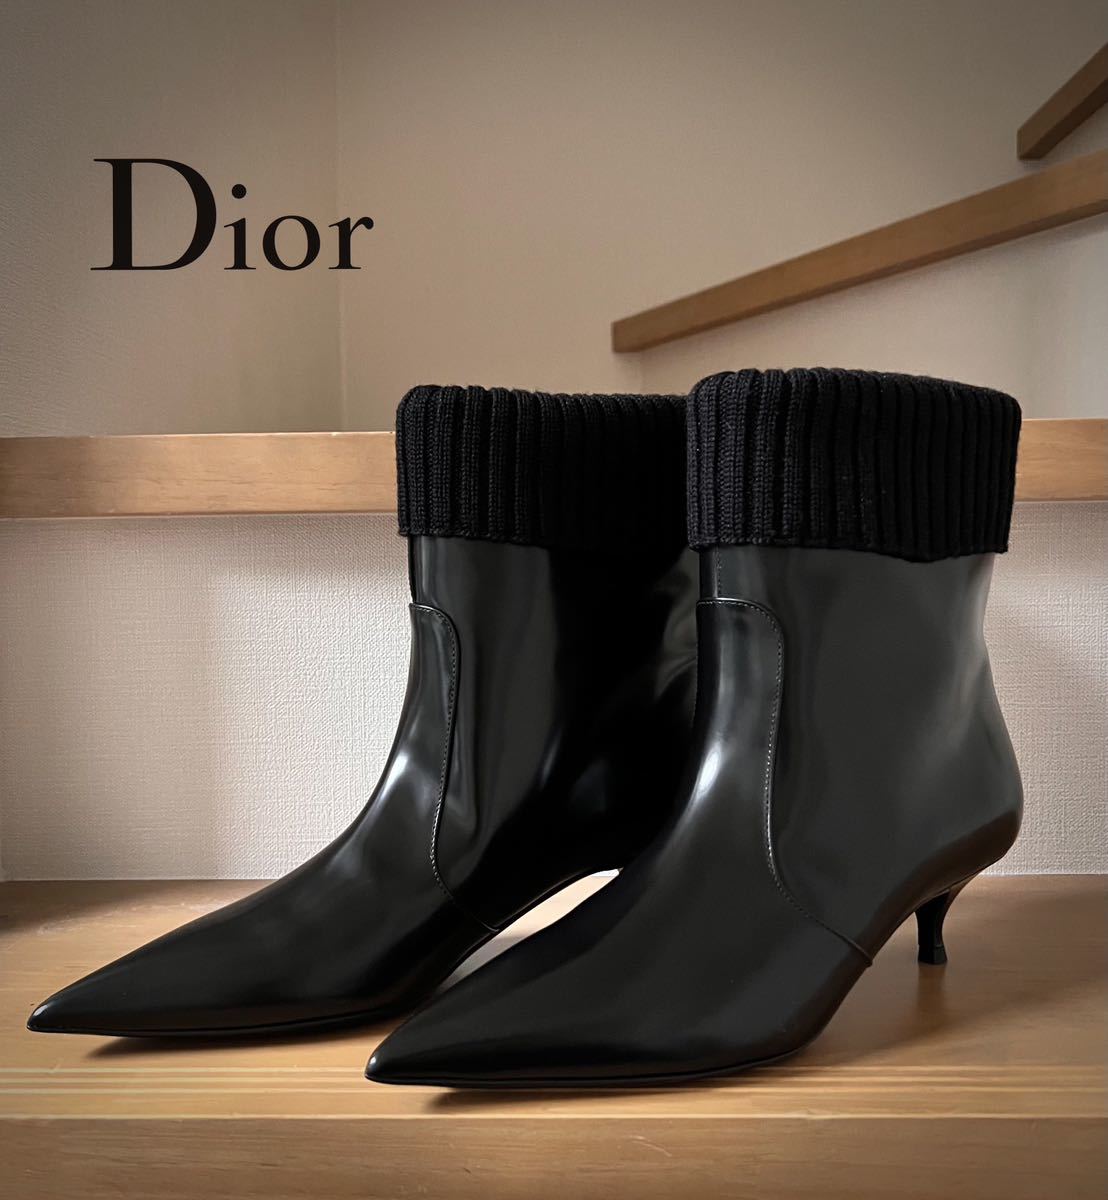 Dior ディオール ニットショートブーツ 黒 37 24.0 レザー mht.care